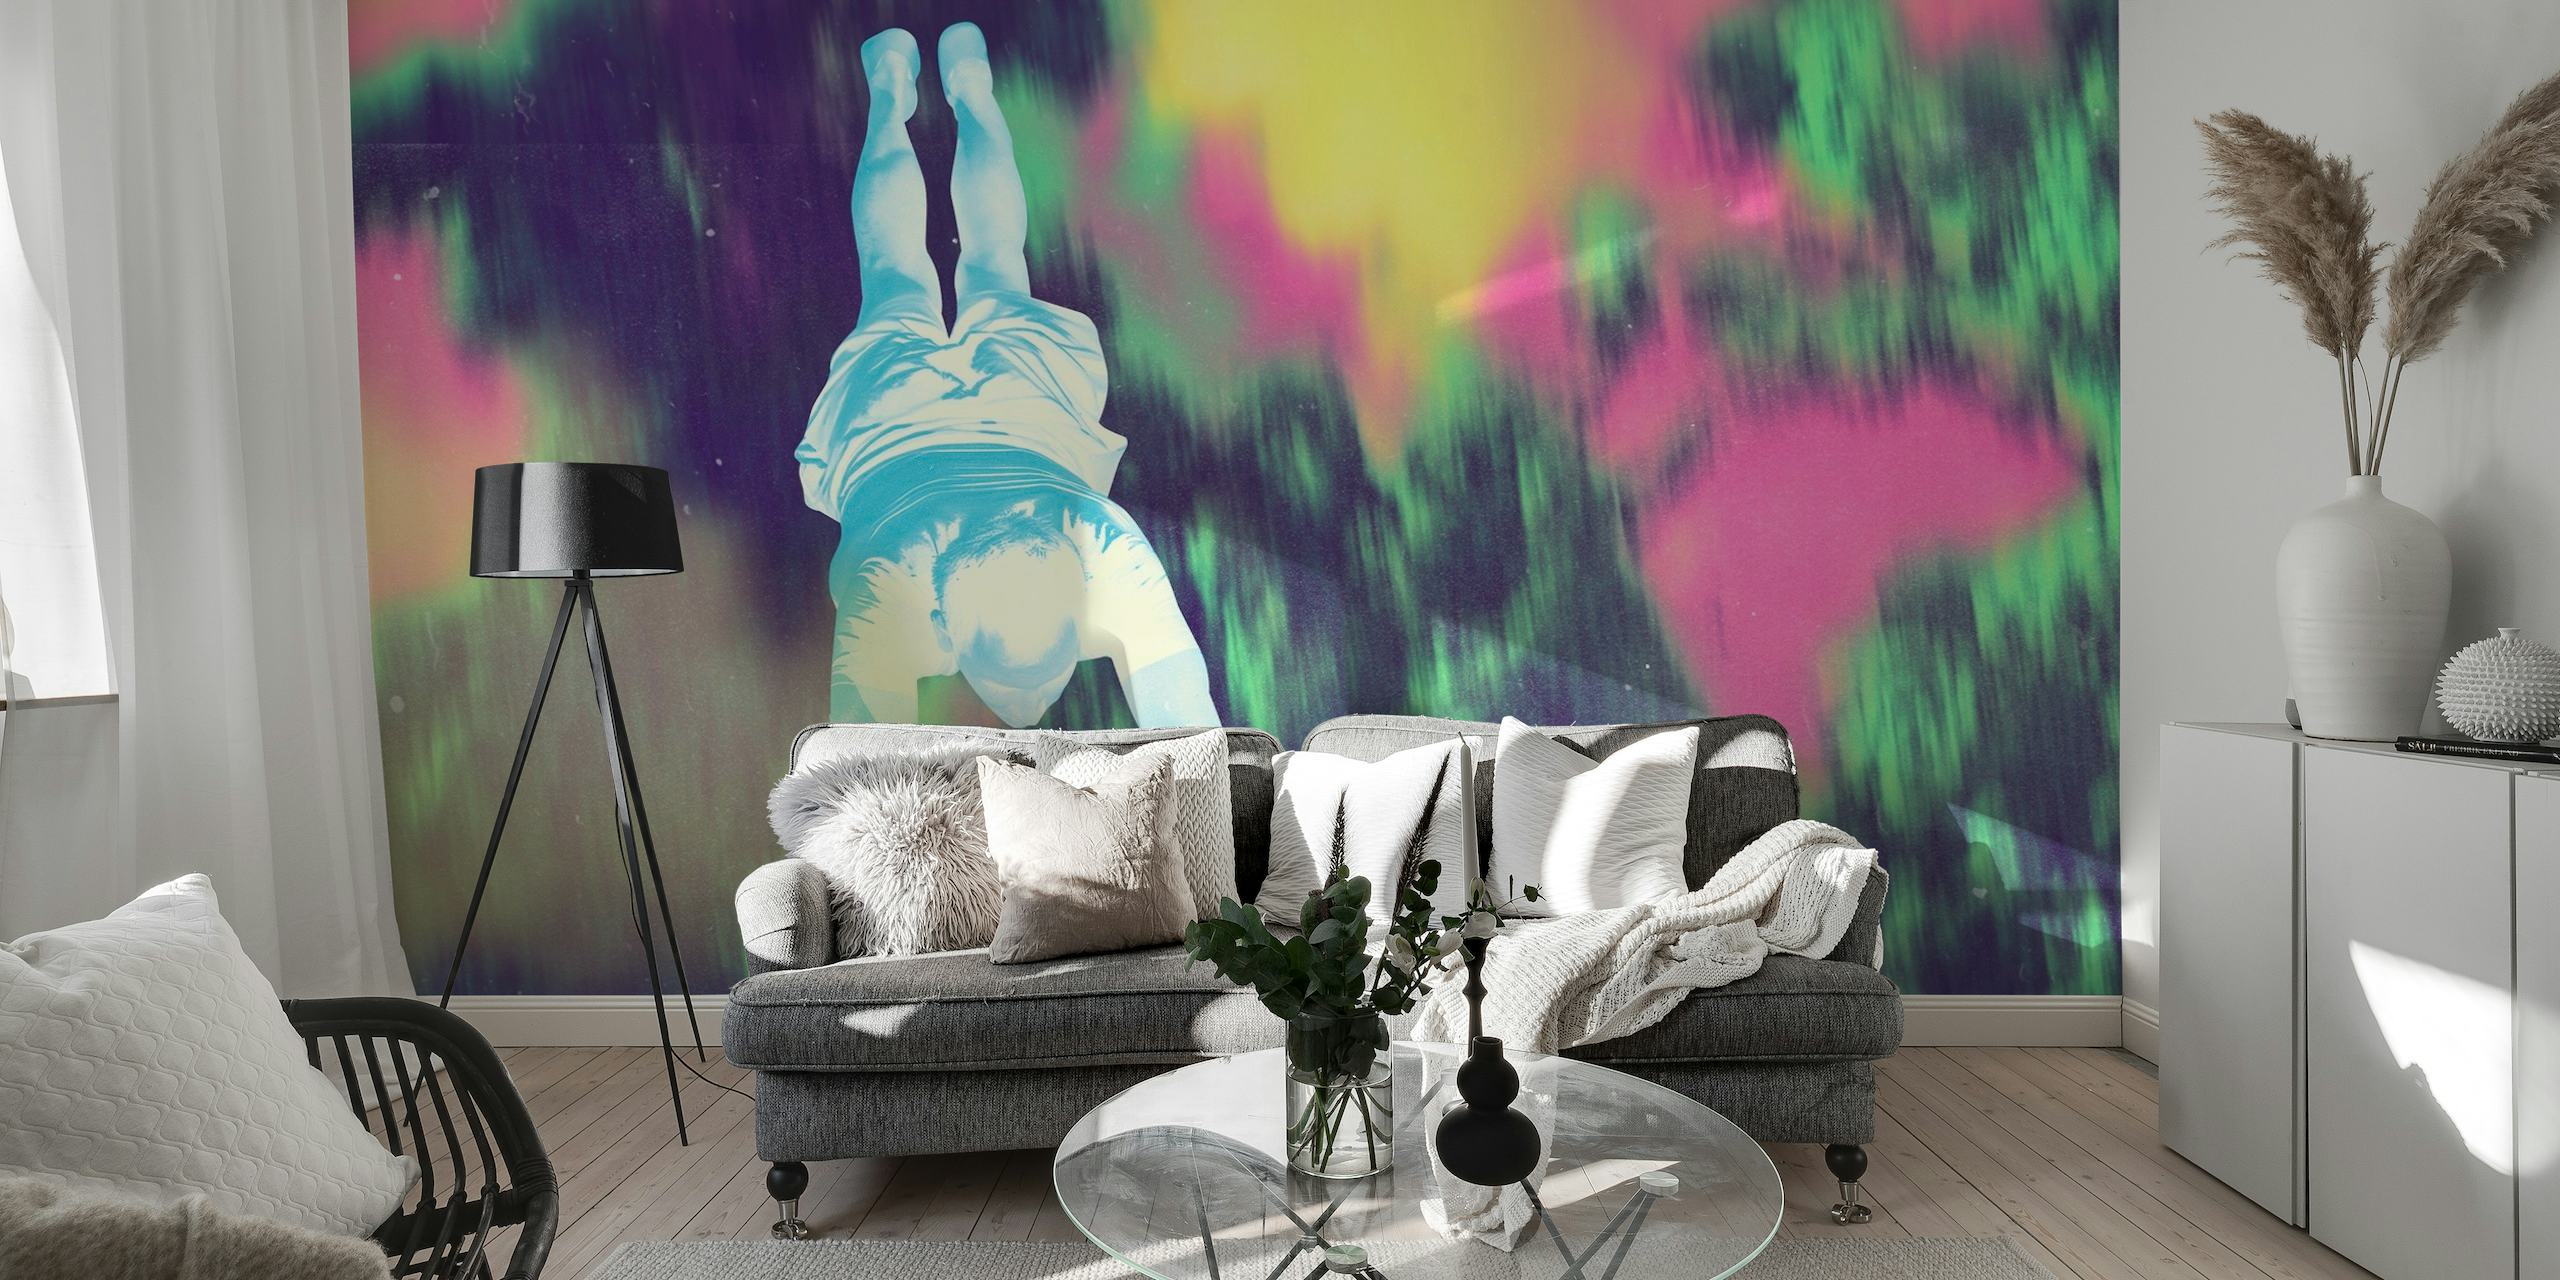 Mural abstracto de estilo pop art con un fondo colorido y grunge con una figura central que simboliza la libertad.